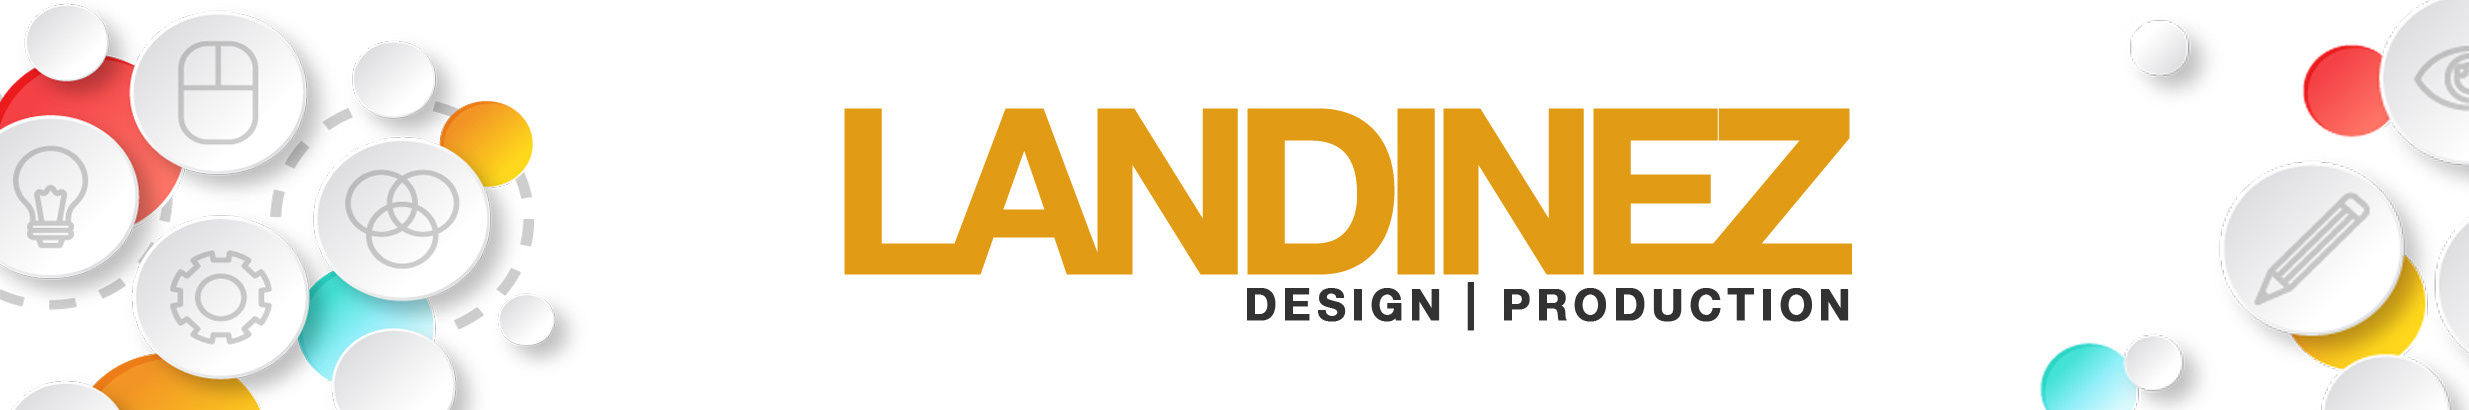 Baner profilu użytkownika LANDINEZ DESIGN PRODUCTION